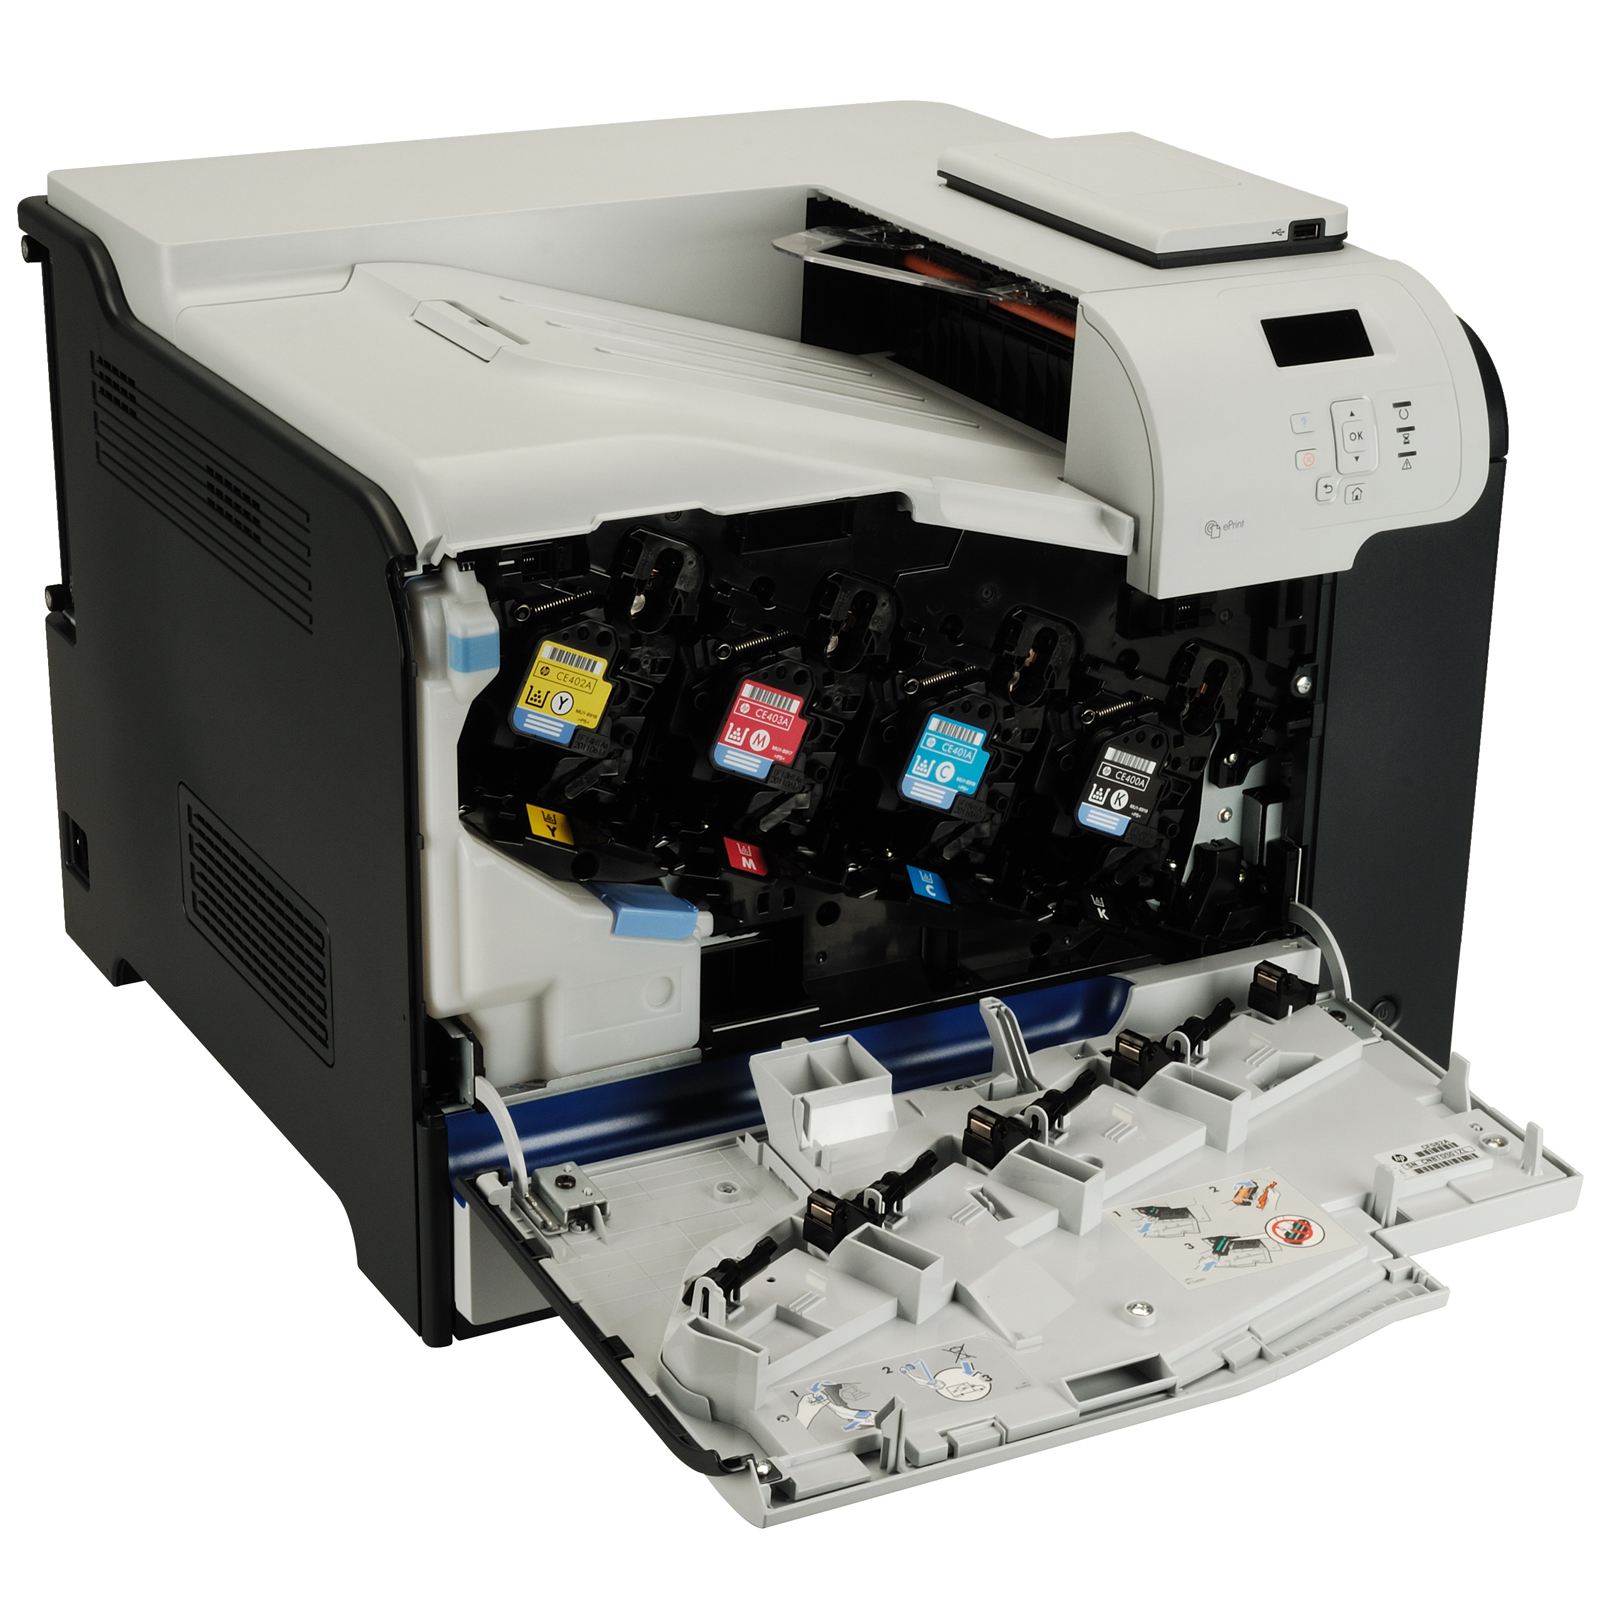 Лазерные принтеры обзор. LASERJET 500 Color m551.